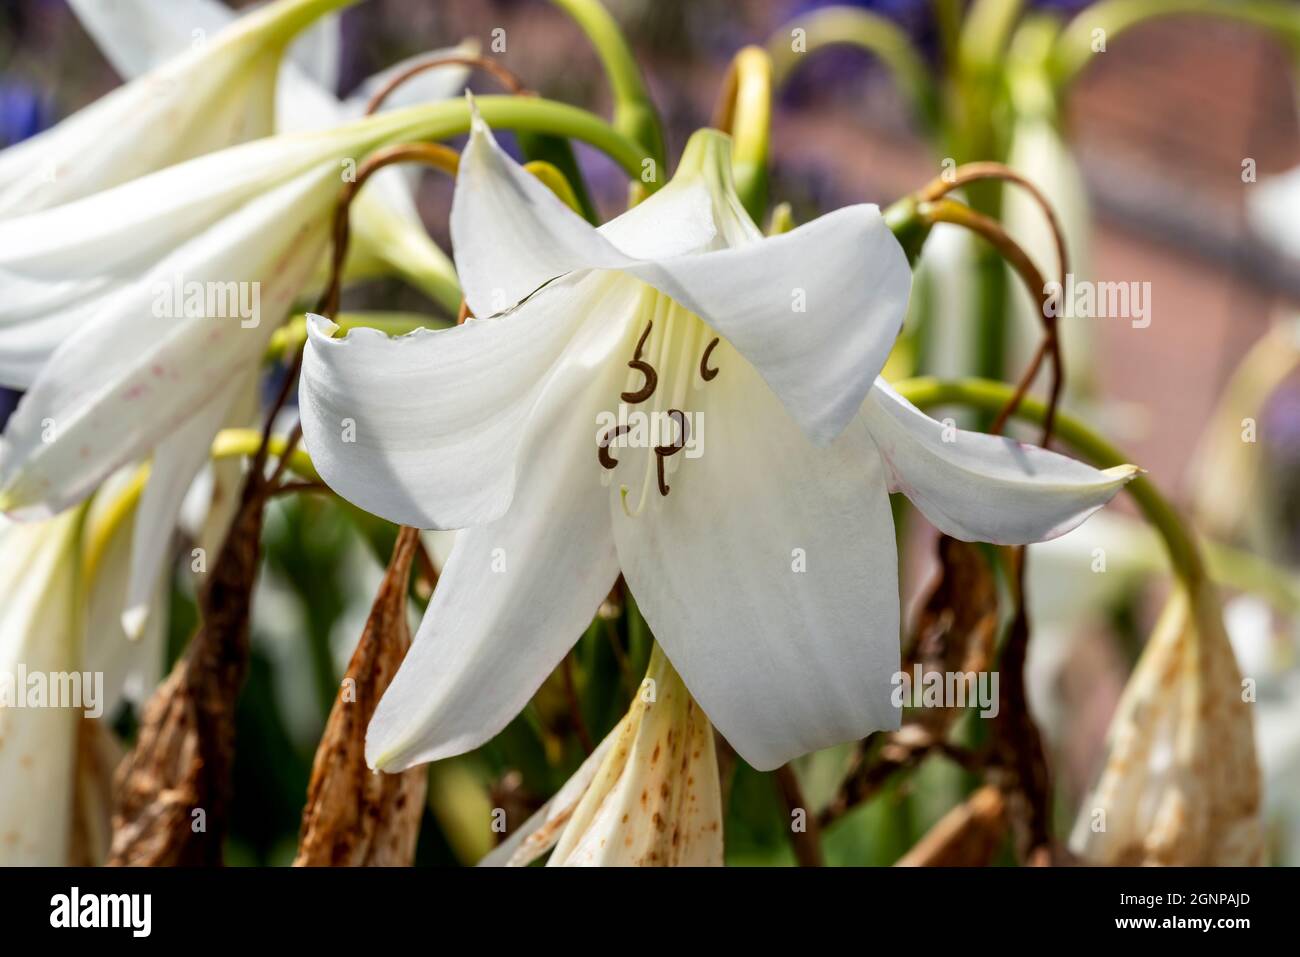 Crinum x Powellii alba un autunno estate autunno che fioriscono pianta bulbosa con una tromba bianca come il fiore estivo comunemente noto come giglio palude, pH di scorta Foto Stock